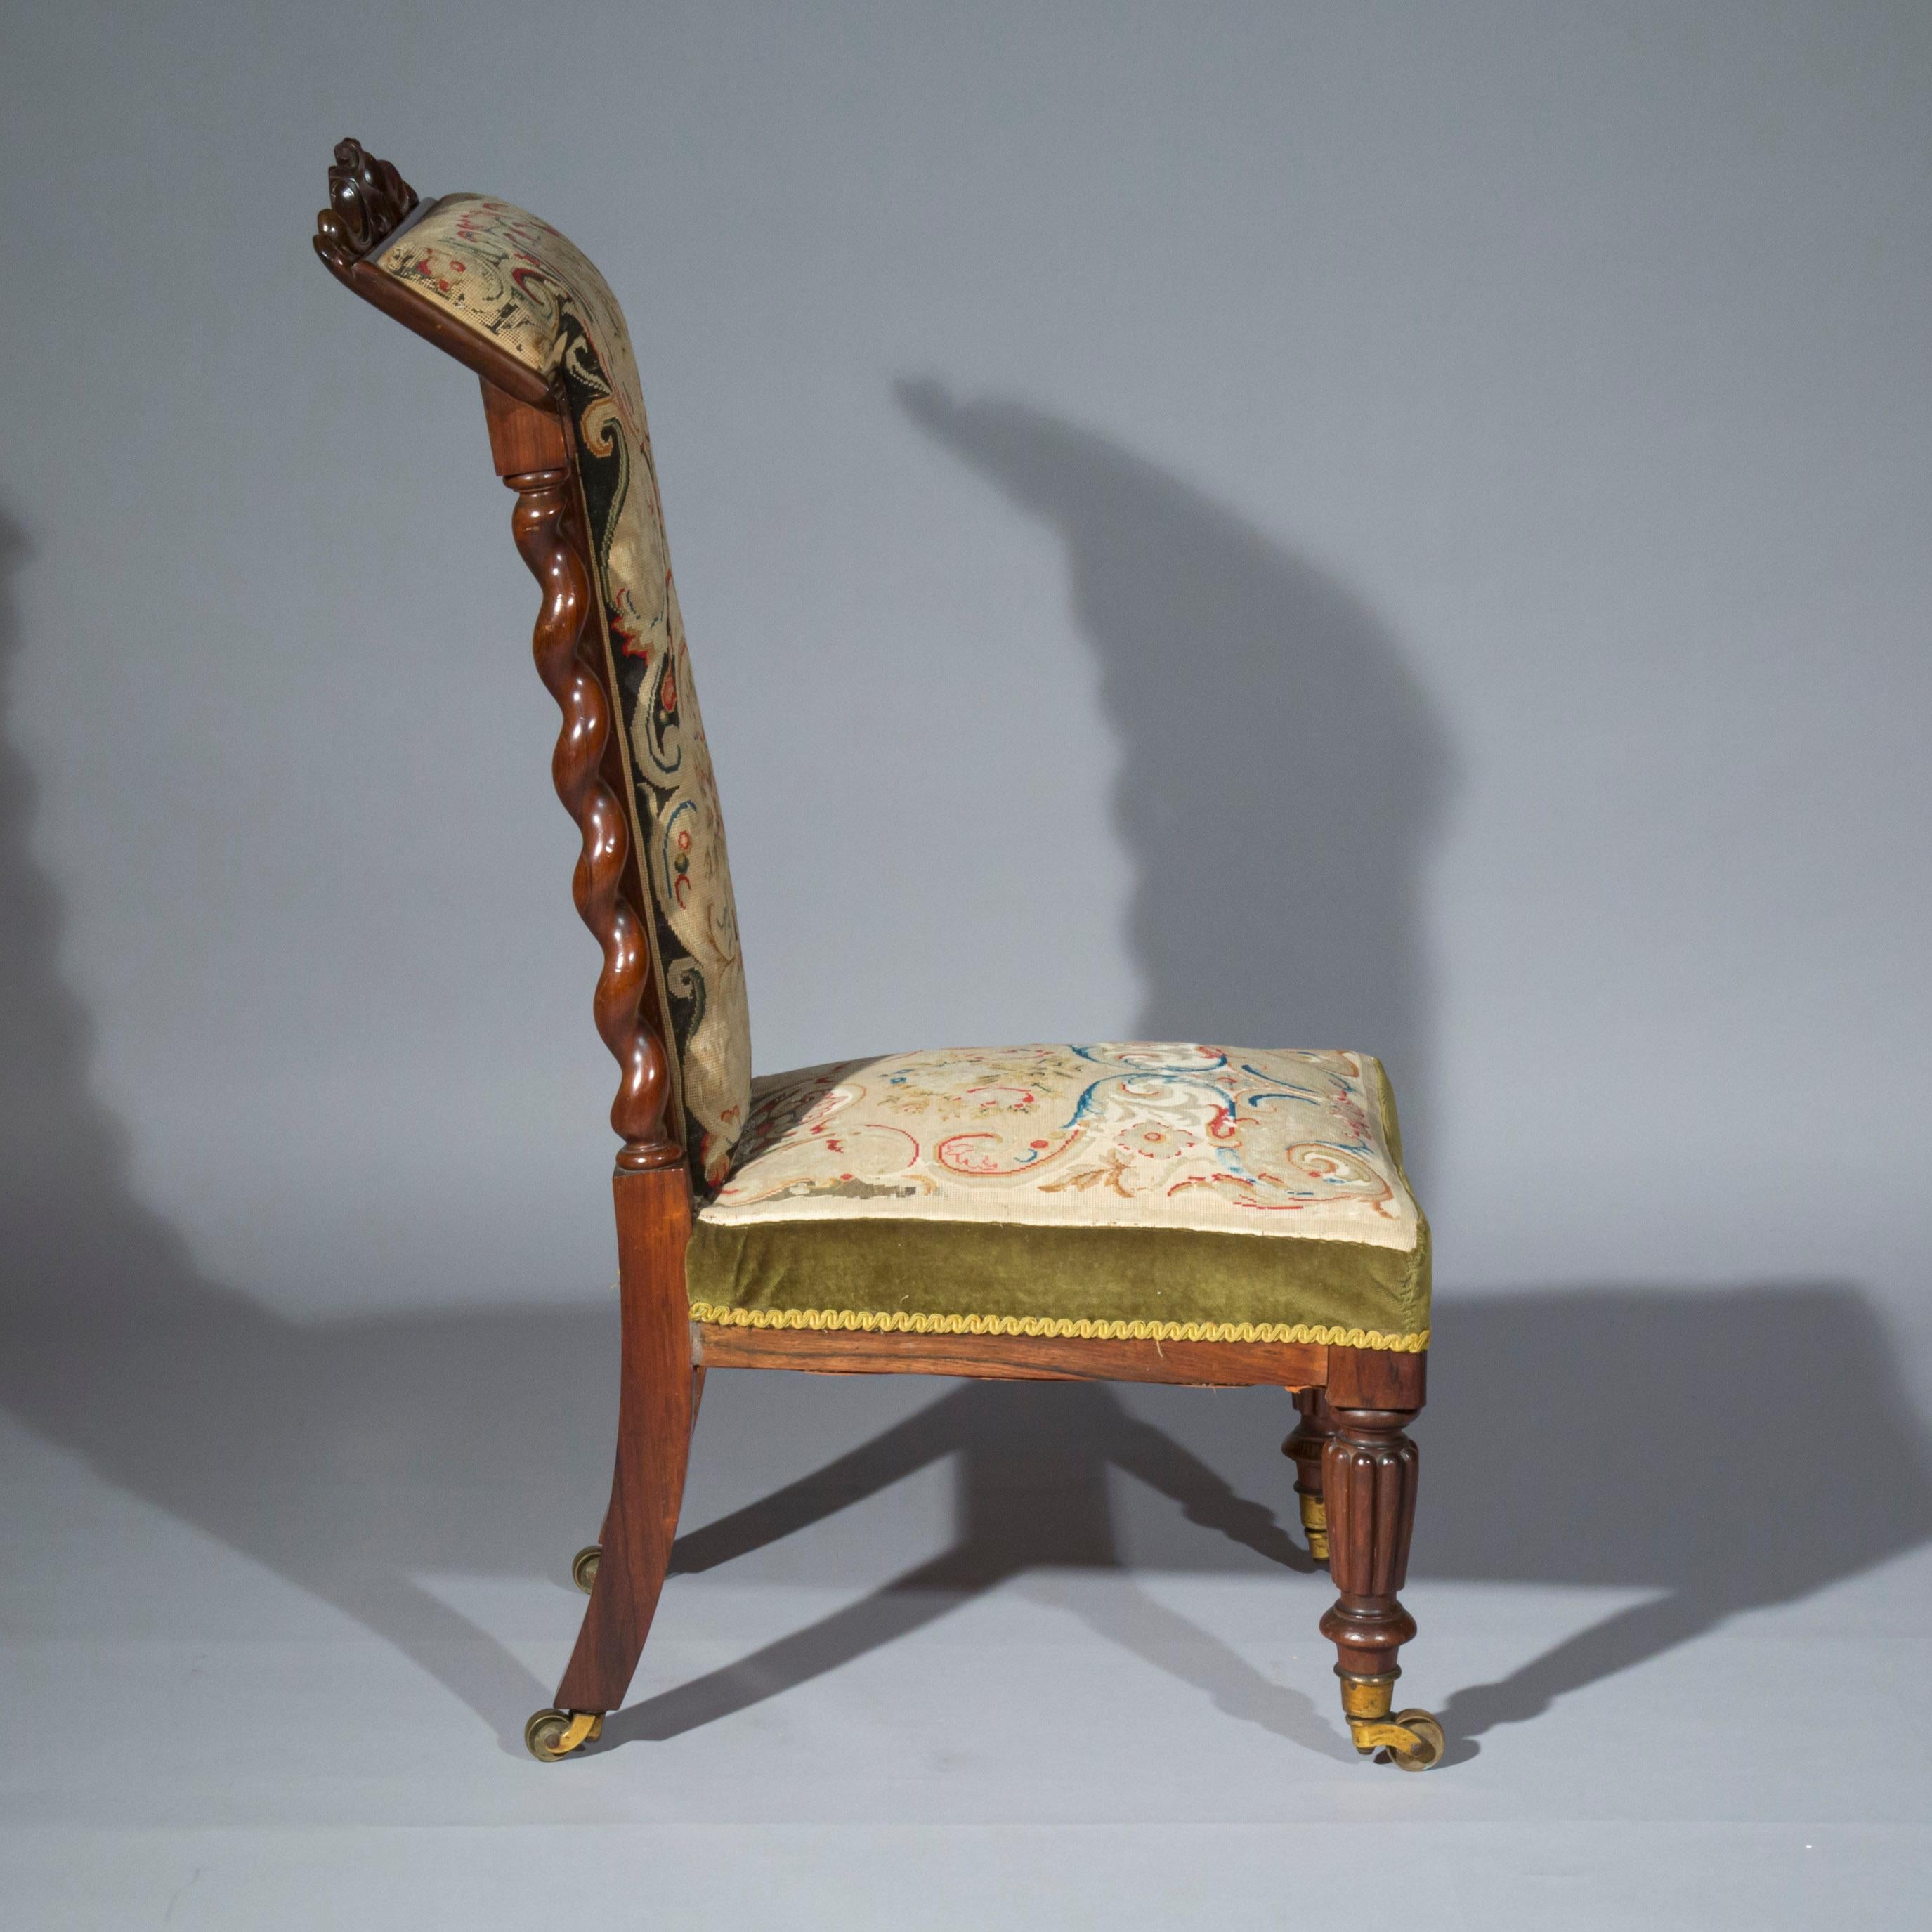 Intéressant fauteuil de petites dimensions du début du 19e siècle, ayant conservé sa tapisserie à l'aiguille d'origine, anglais, vers 1835.

Cette chaise constitue un siège bas utile et polyvalent. Elle peut être utilisée de manière conventionnelle